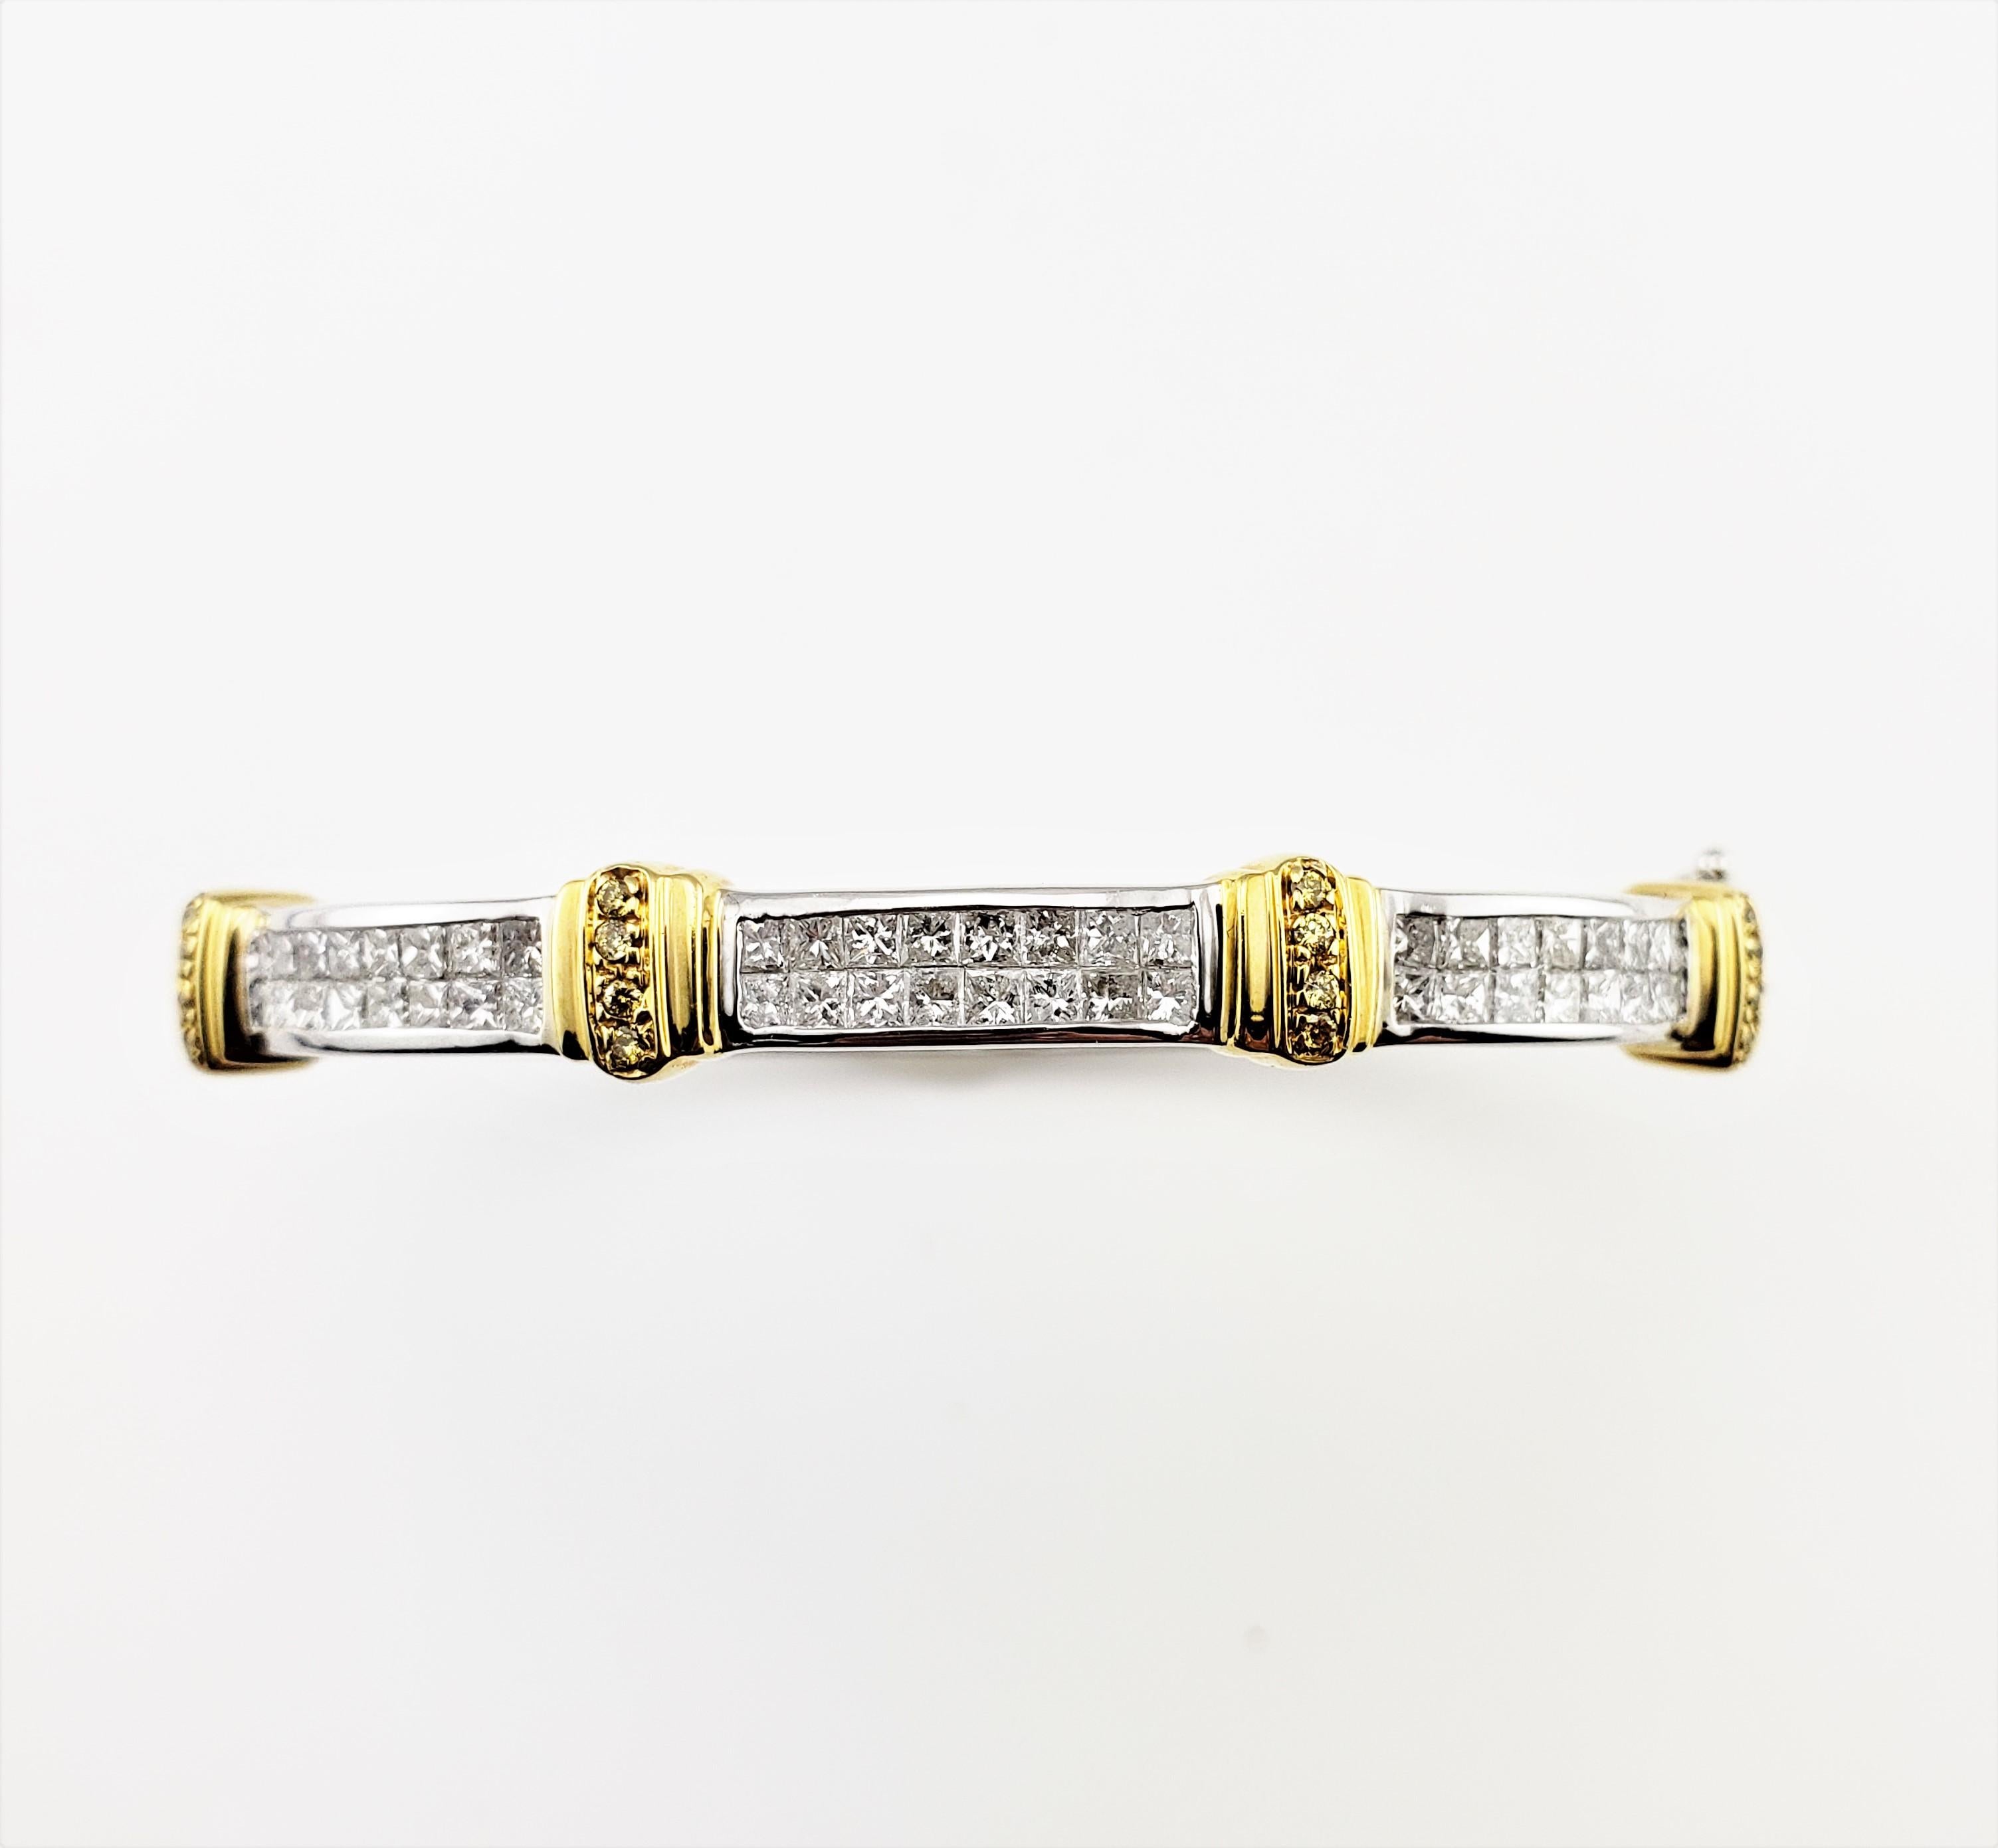 Bracelet vintage en or blanc et jaune 14 carats avec diamants taille princesse certifié GAI-

Ce charmant bracelet bangle présente 64 diamants taille princesse sertis dans de l'or blanc et jaune 14K magnifiquement détaillé.  

Largeur :  5 mm

Poids